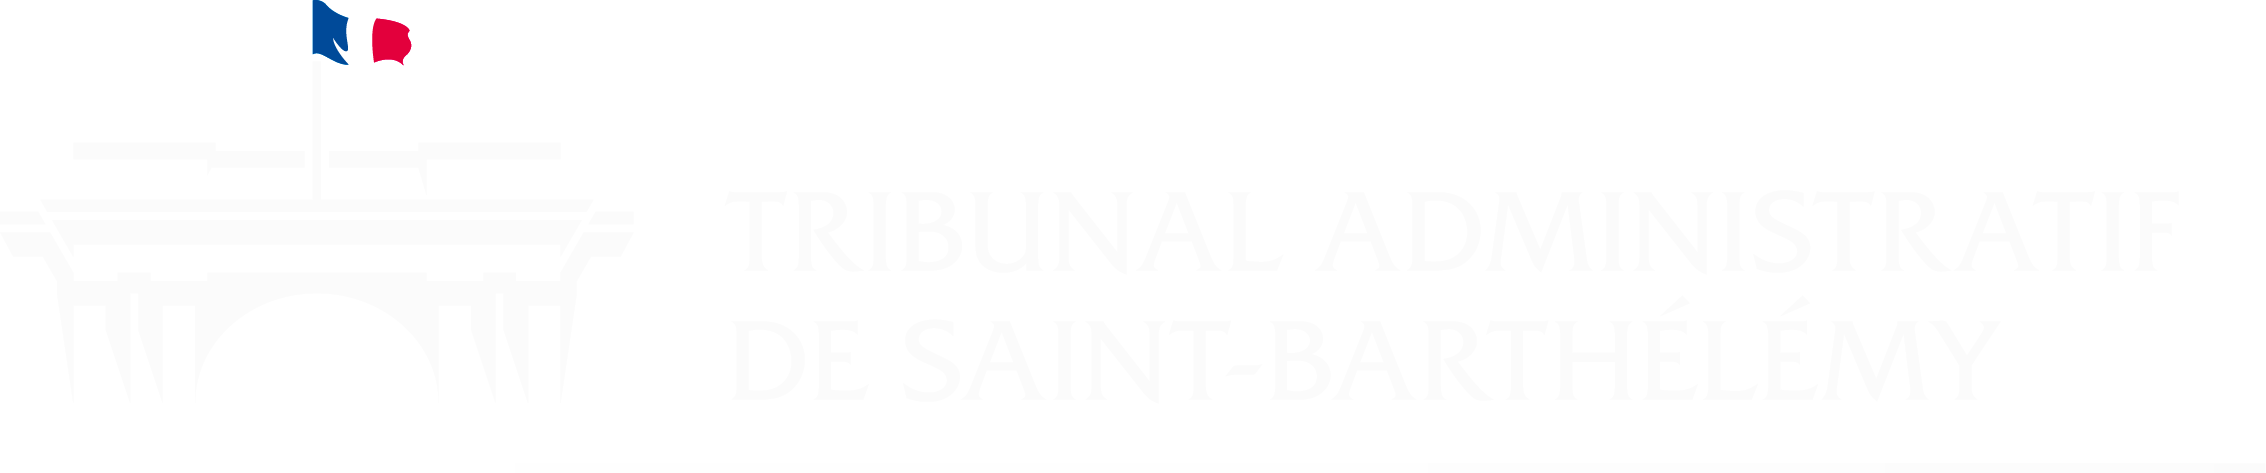 Tribunal administratif de Saint-Barthélémy - Retour à l'accueil